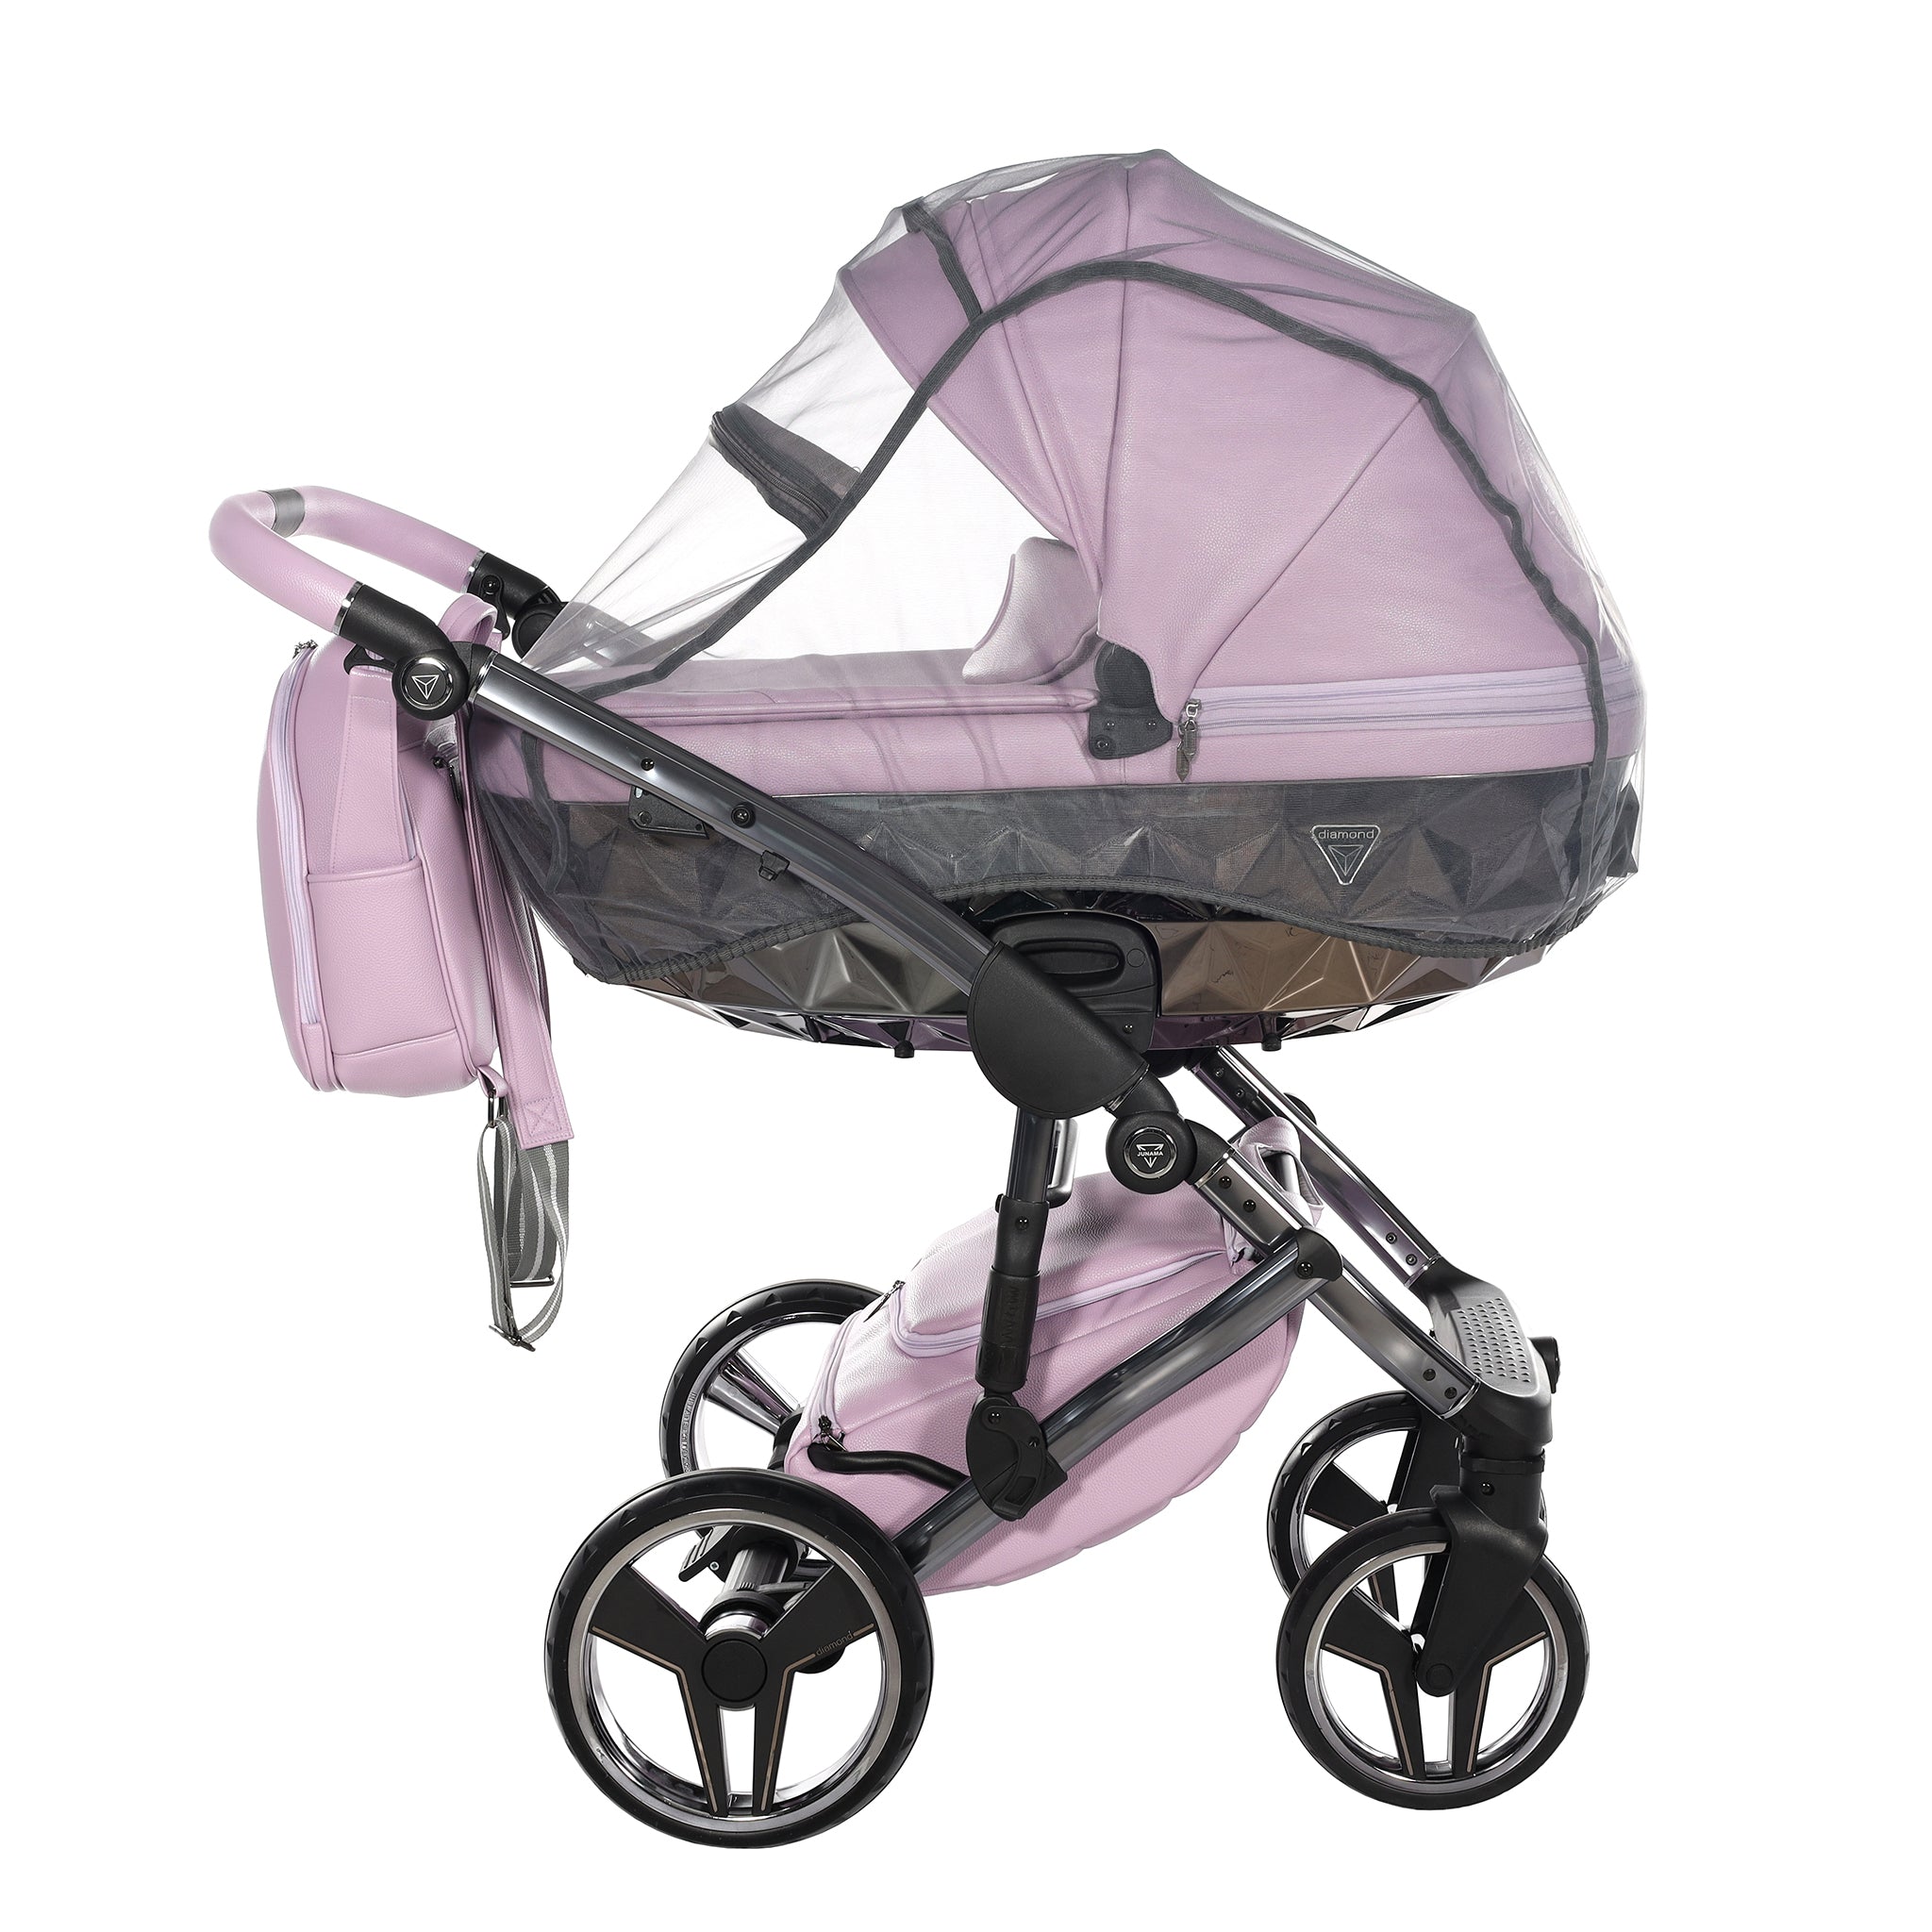 Junama Handcraft, baby prams or stroller 2 in 1 - Violet color, Code number: JUNHC03